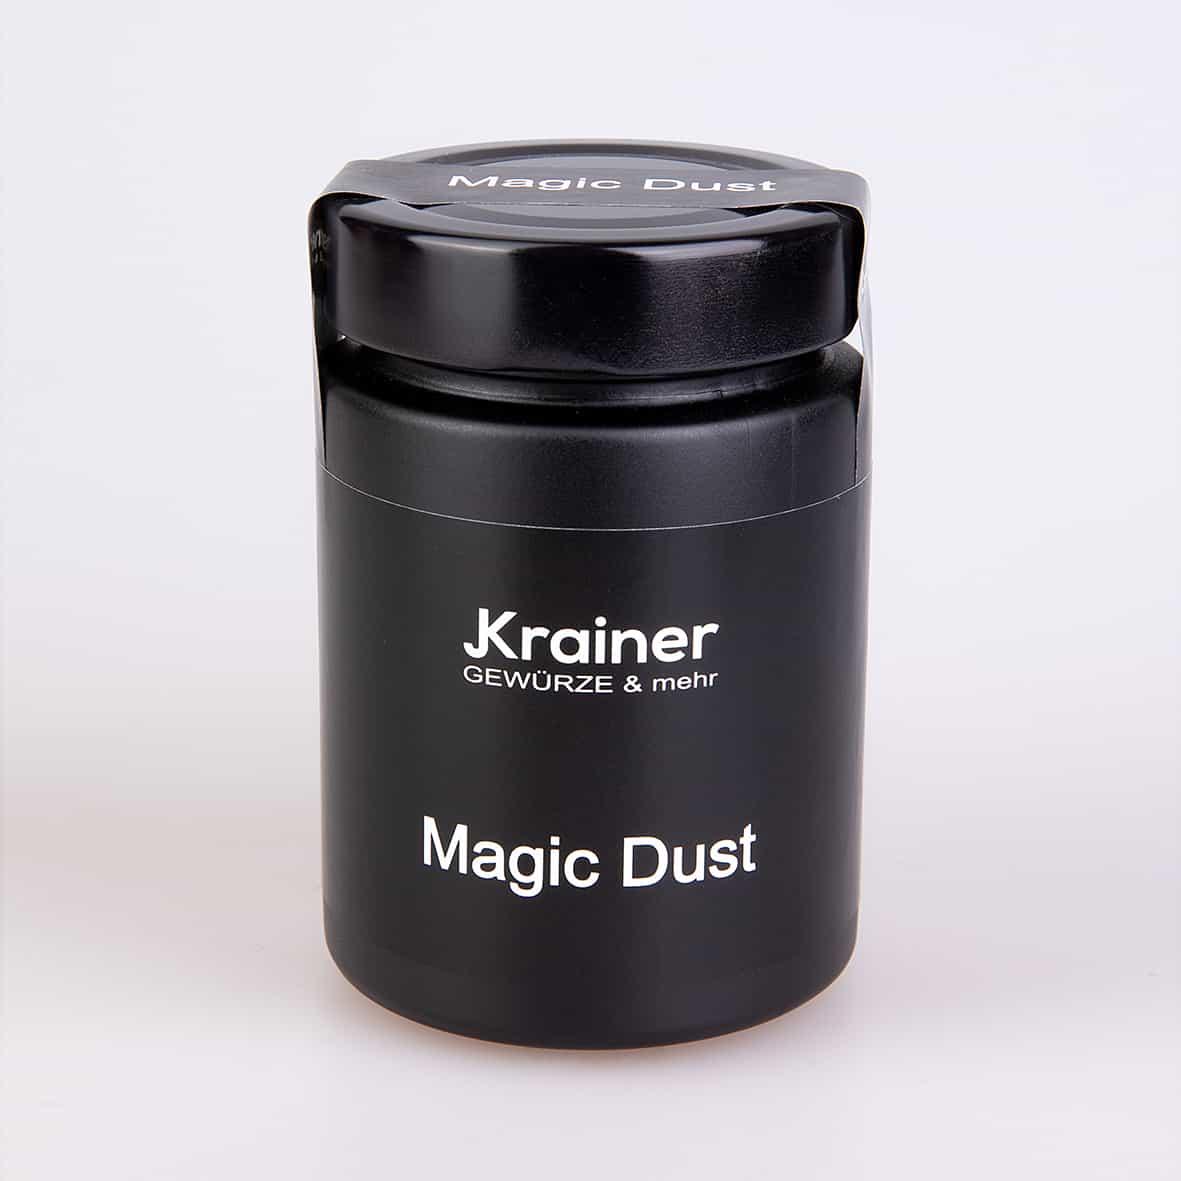 Magic dust